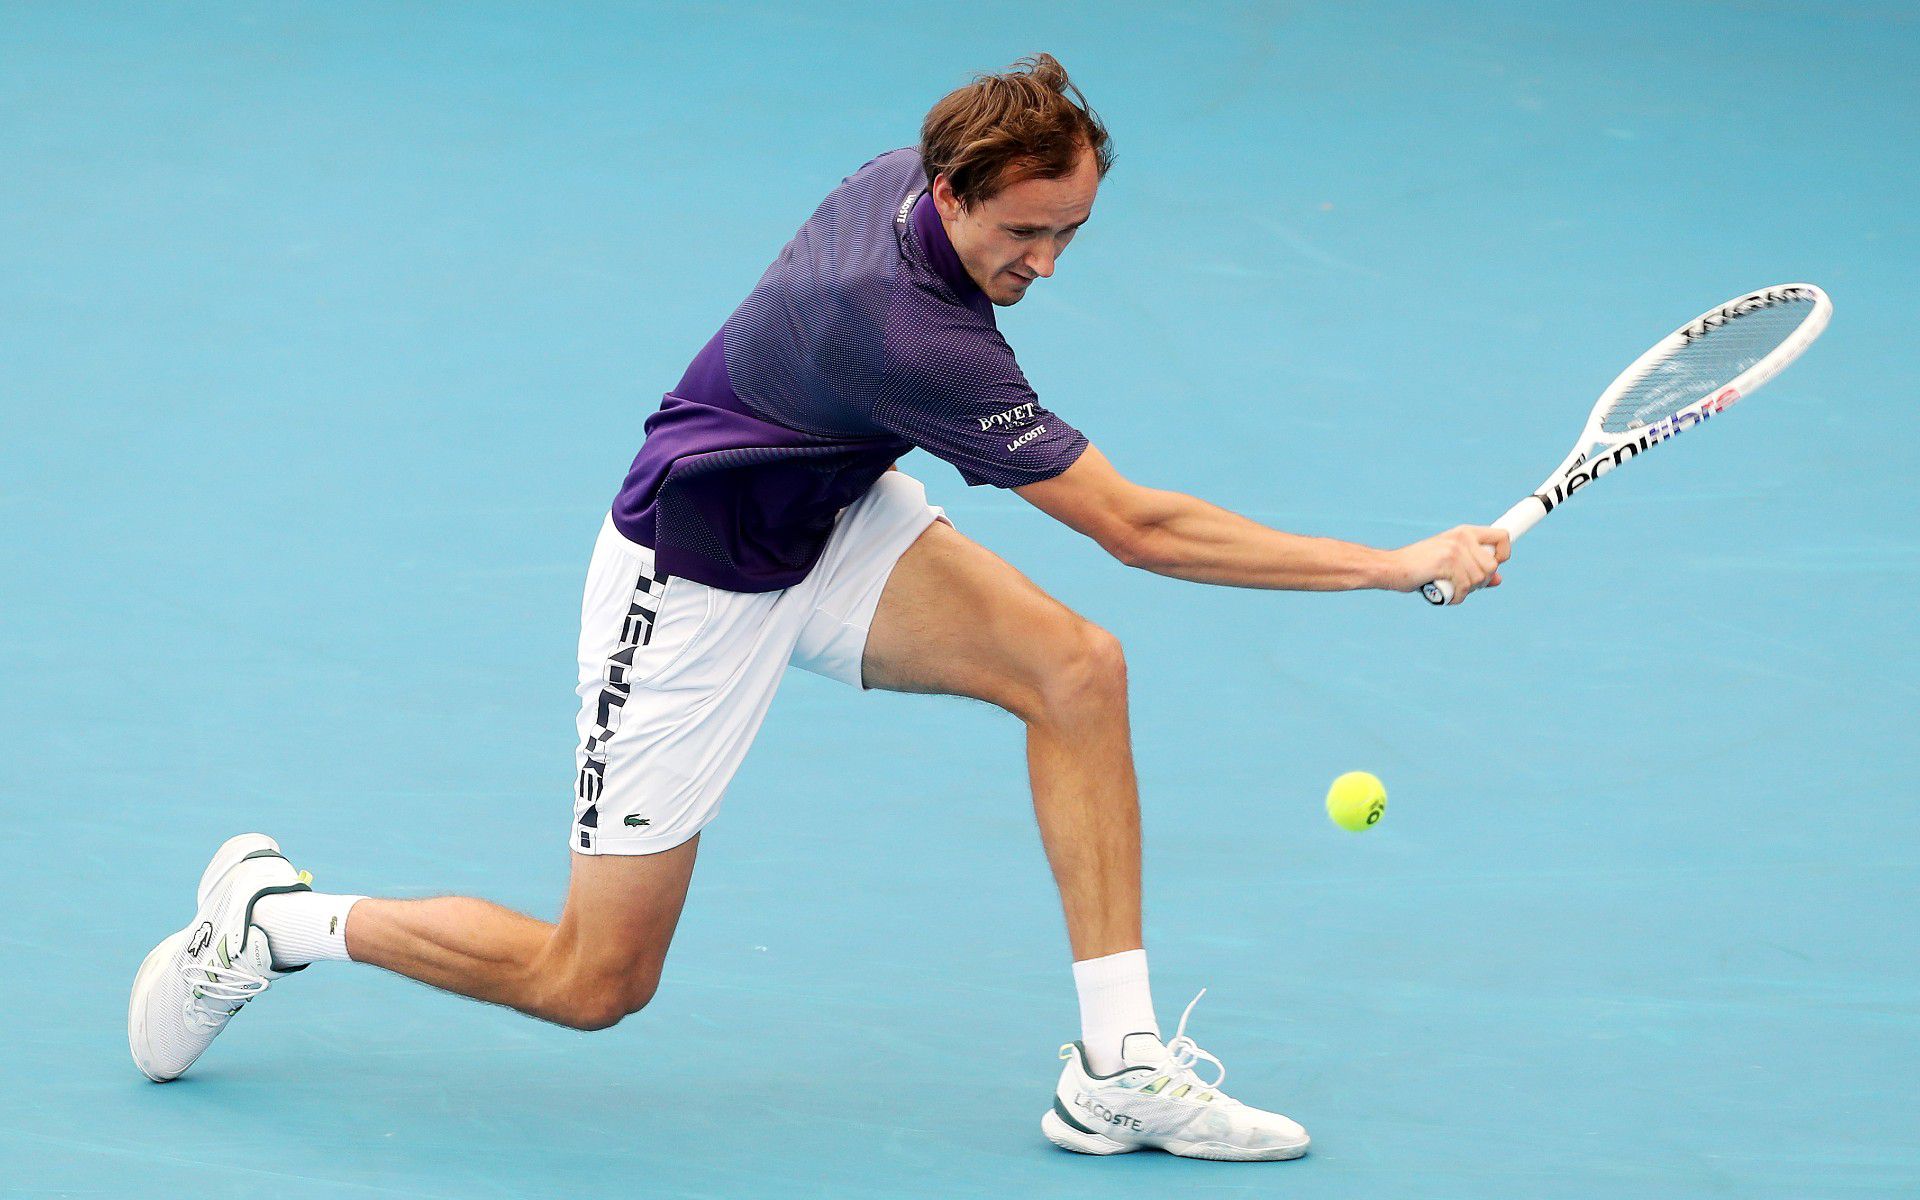 Medvegyev negyeddöntőbe jutott az adelaide-i tenisztornán